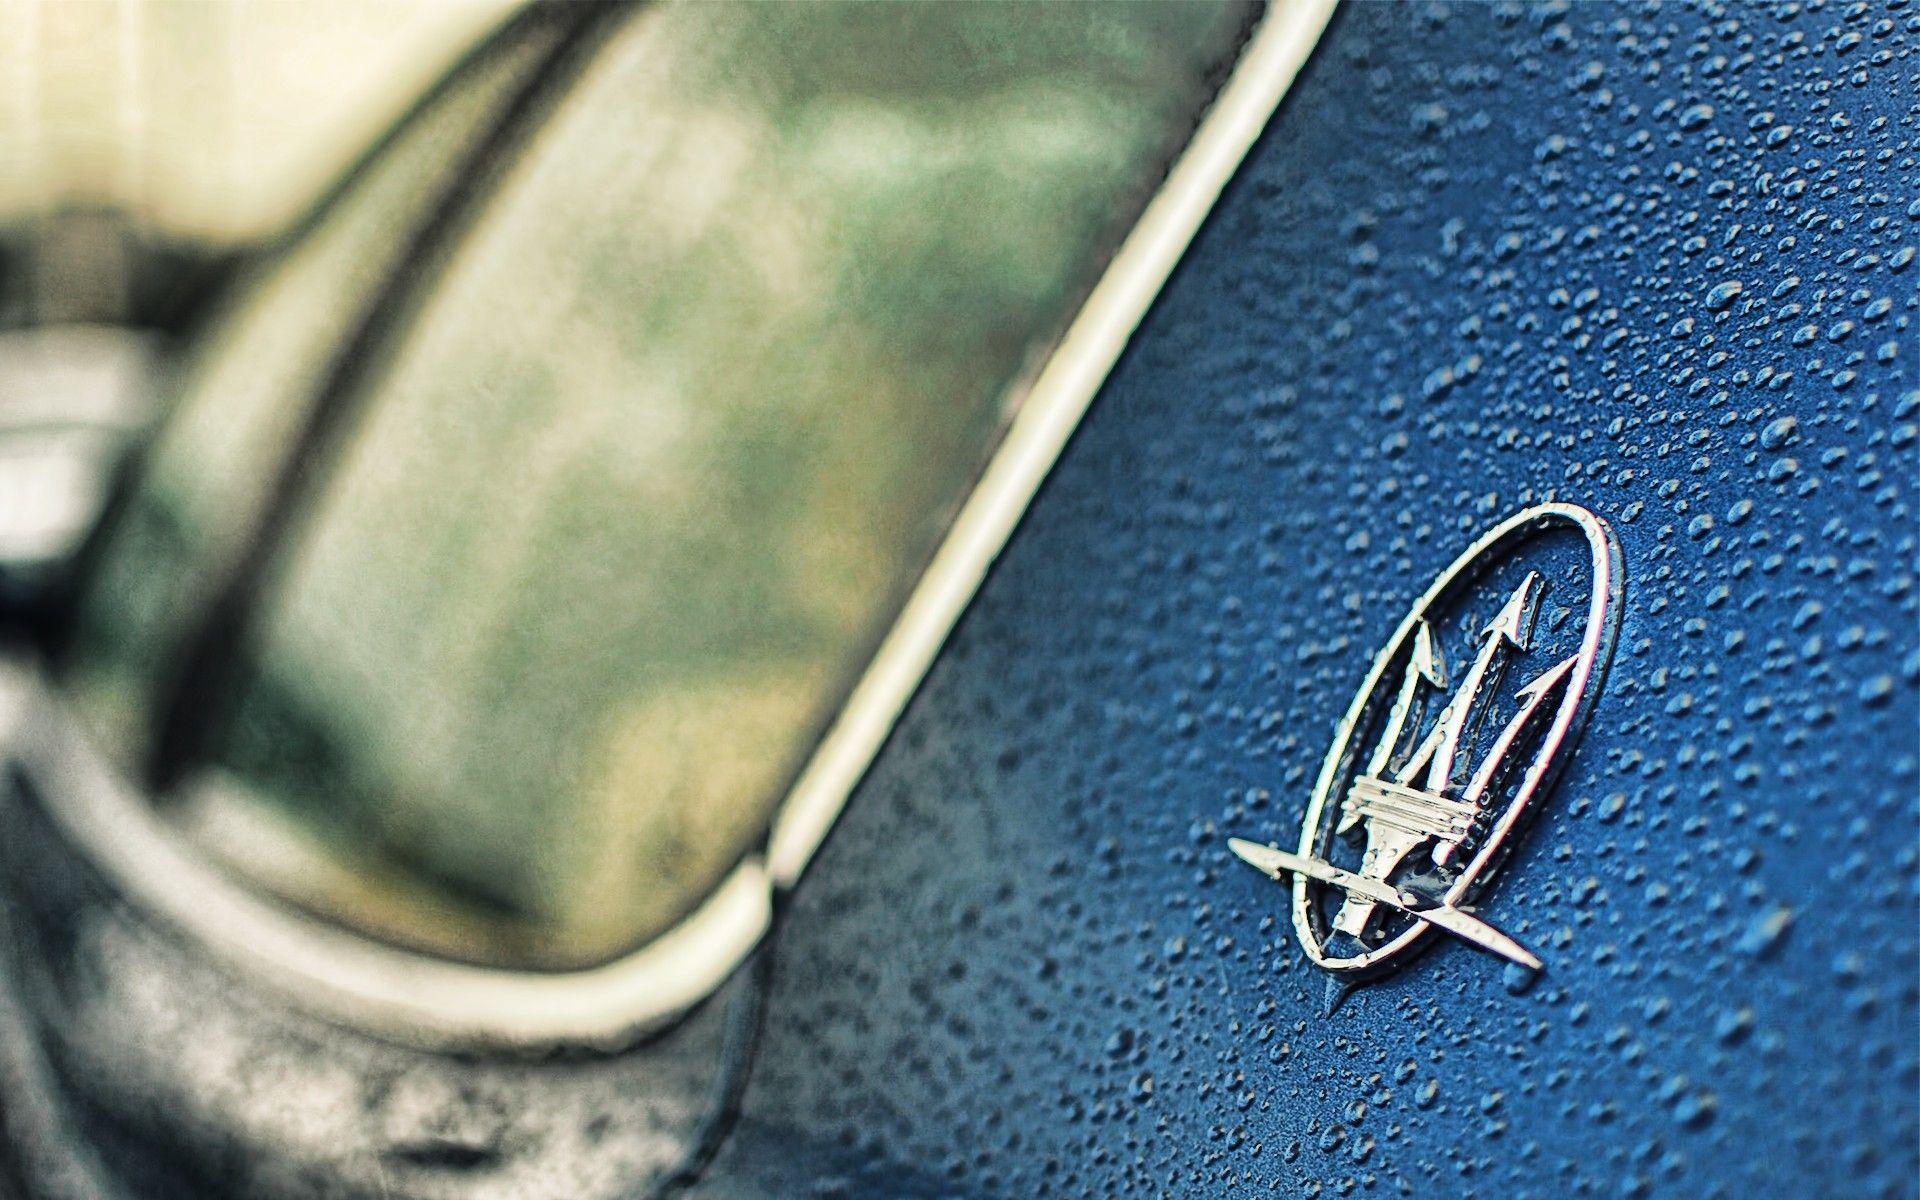 Maserati HD Wallpaper